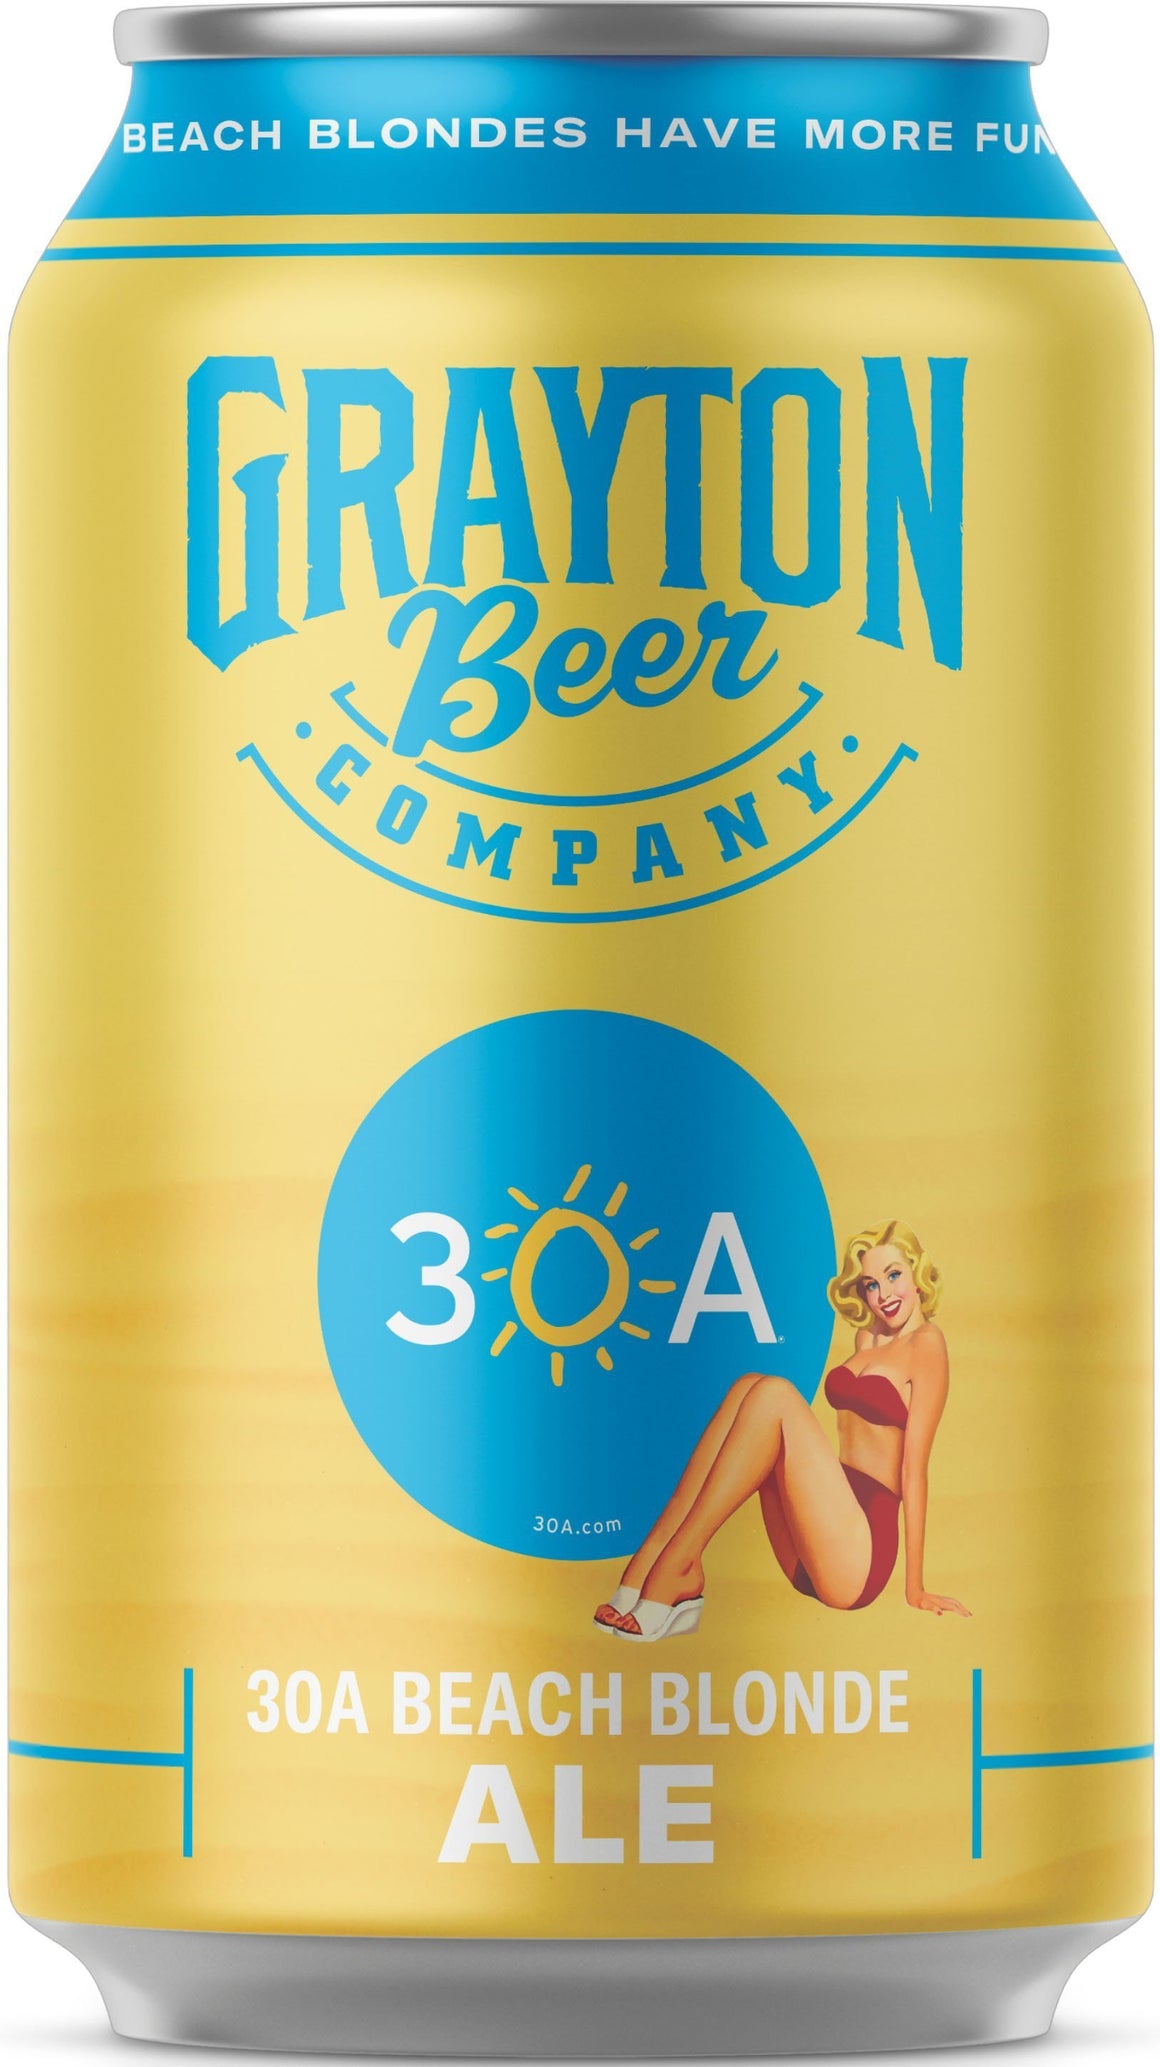 Grayton Beer Company (Santa Rosa Beach, Florida) Craft Beer Grayton Beer 30A 6-Pack